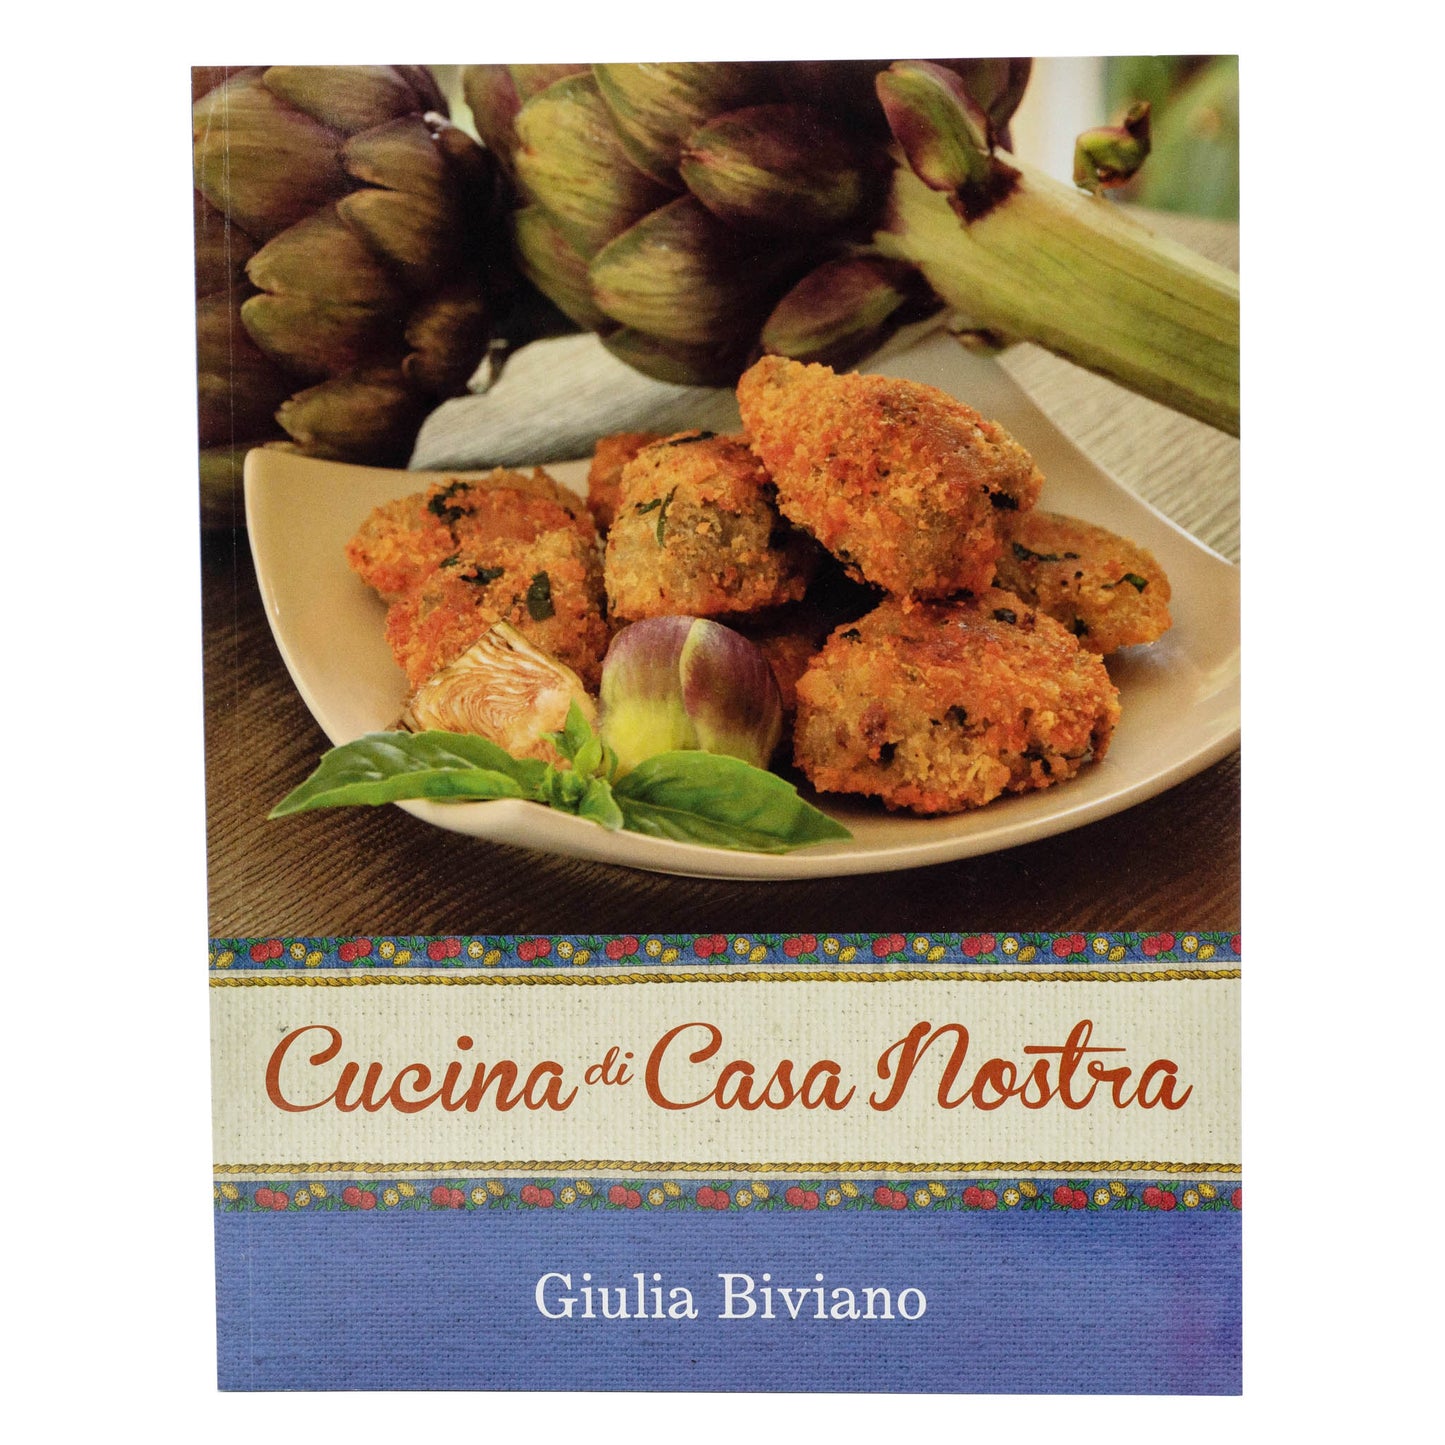 A recipe book with over 220 italian mediterranean recipes by Giulia Biviano